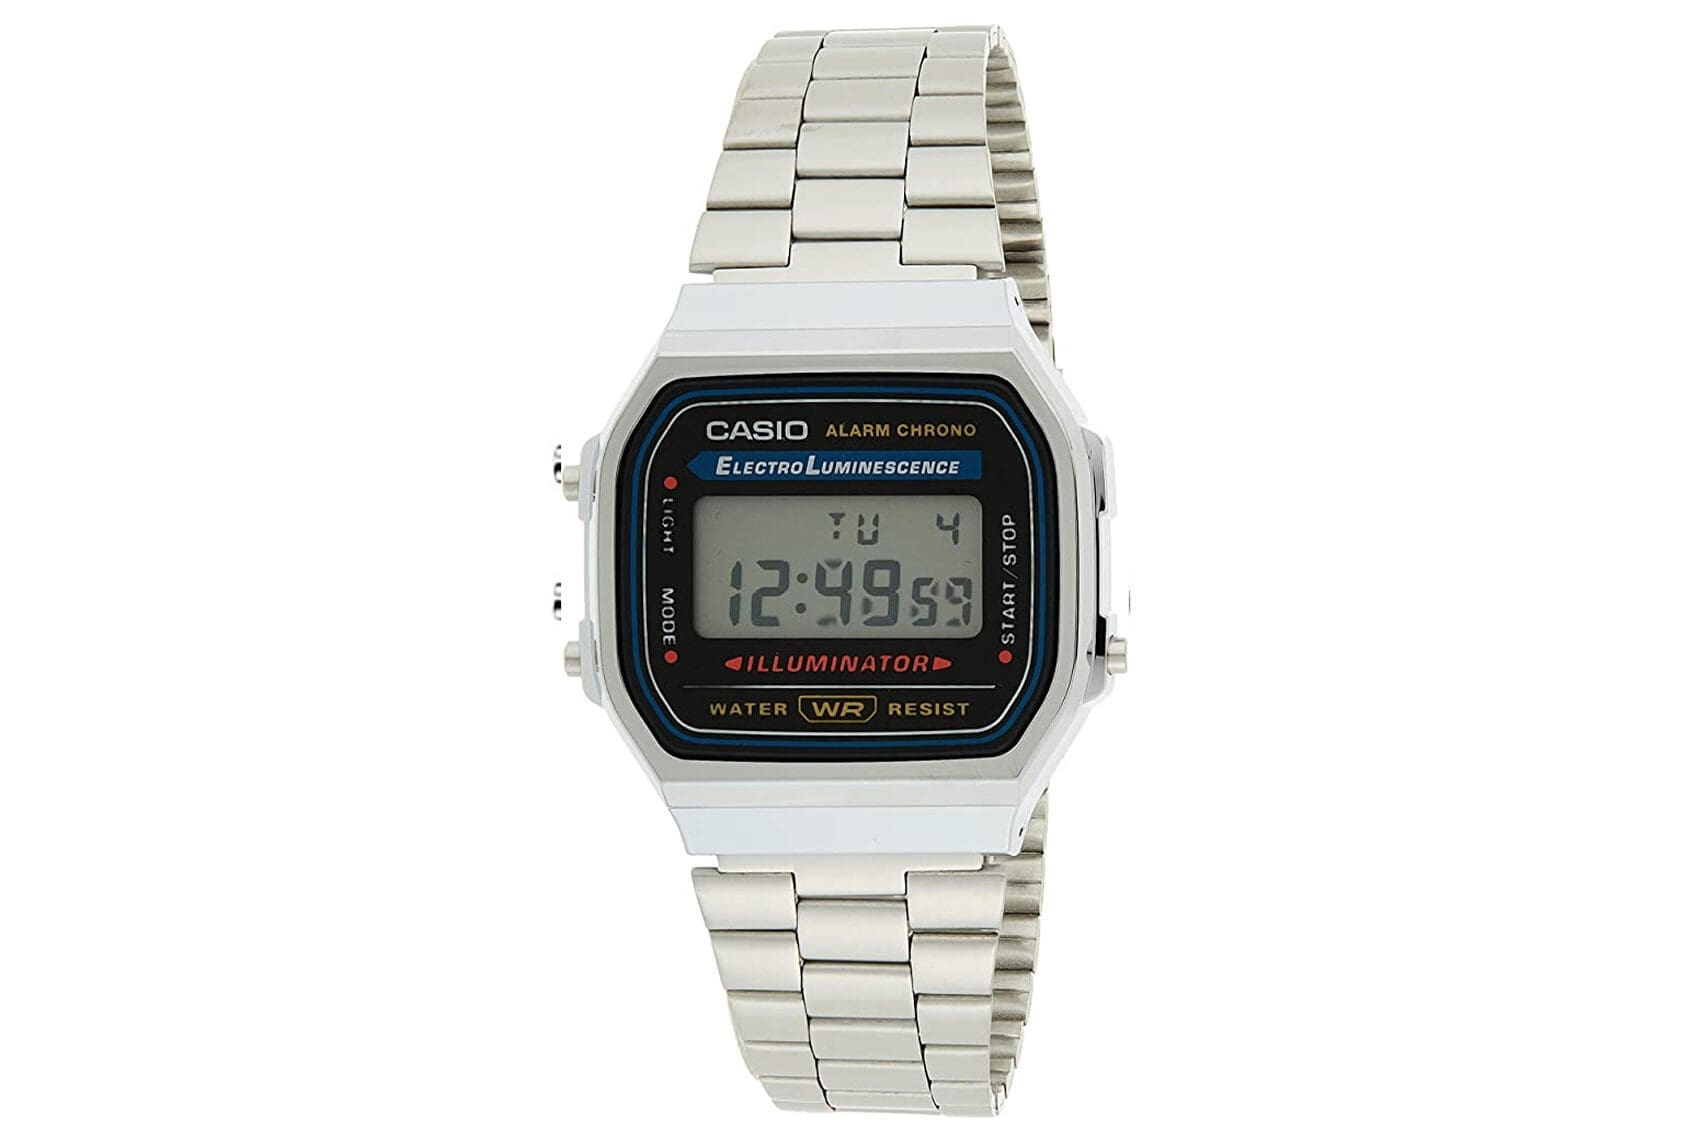 Casio watches under $50